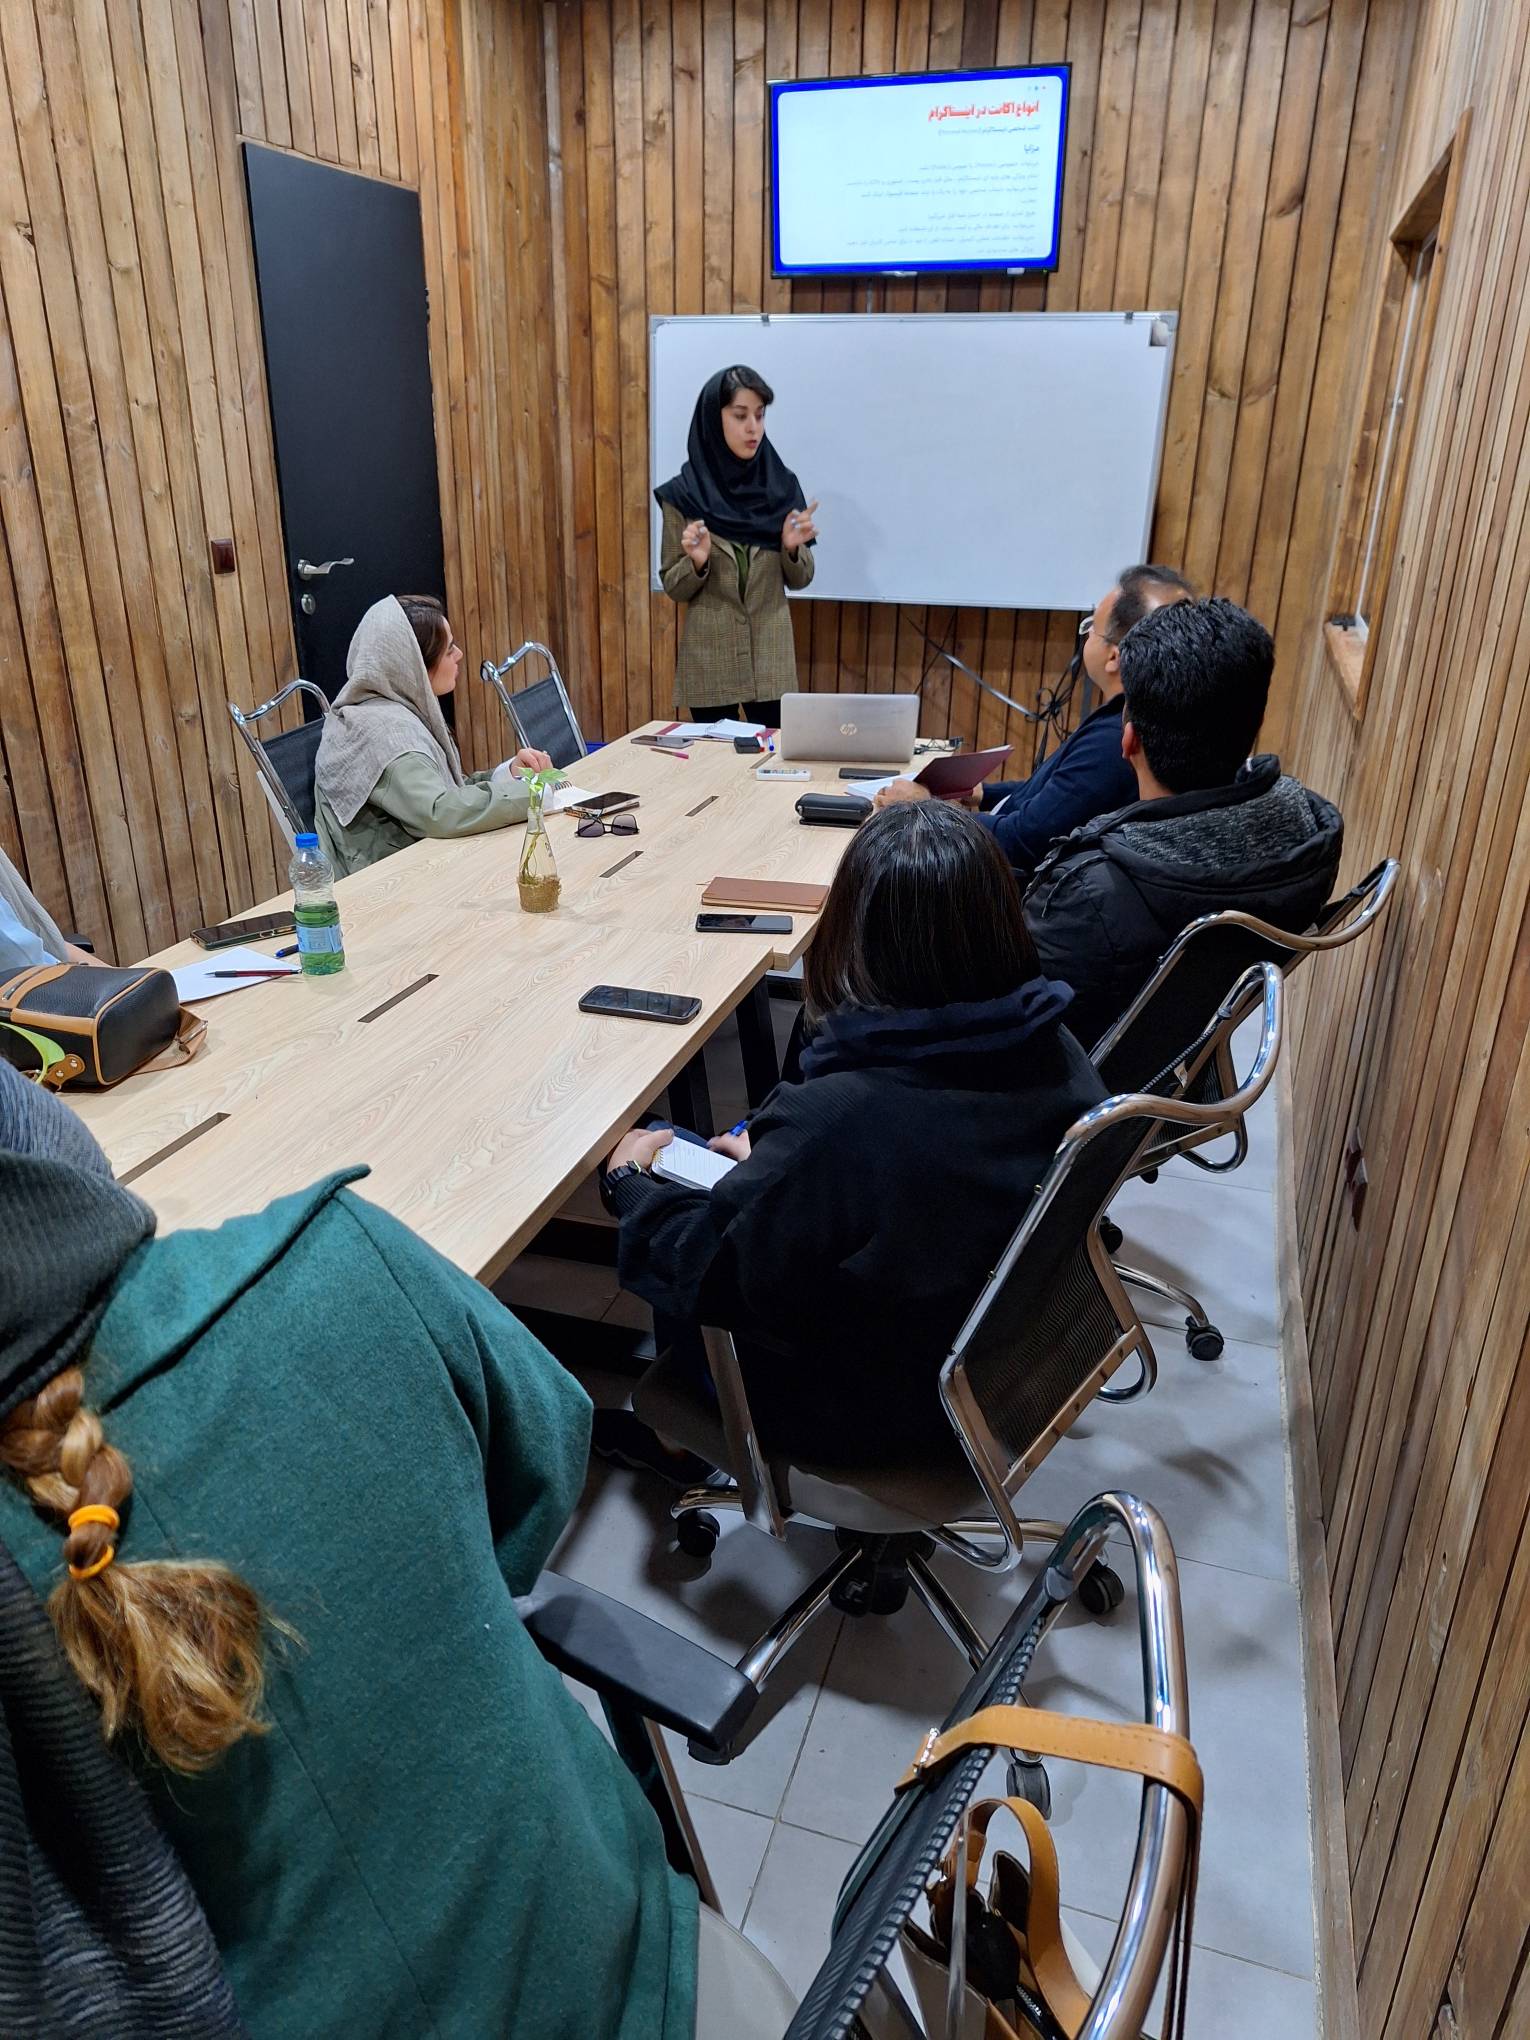 آموزش اینستاگرام در شیراز توسط آموزش دهنده خانم